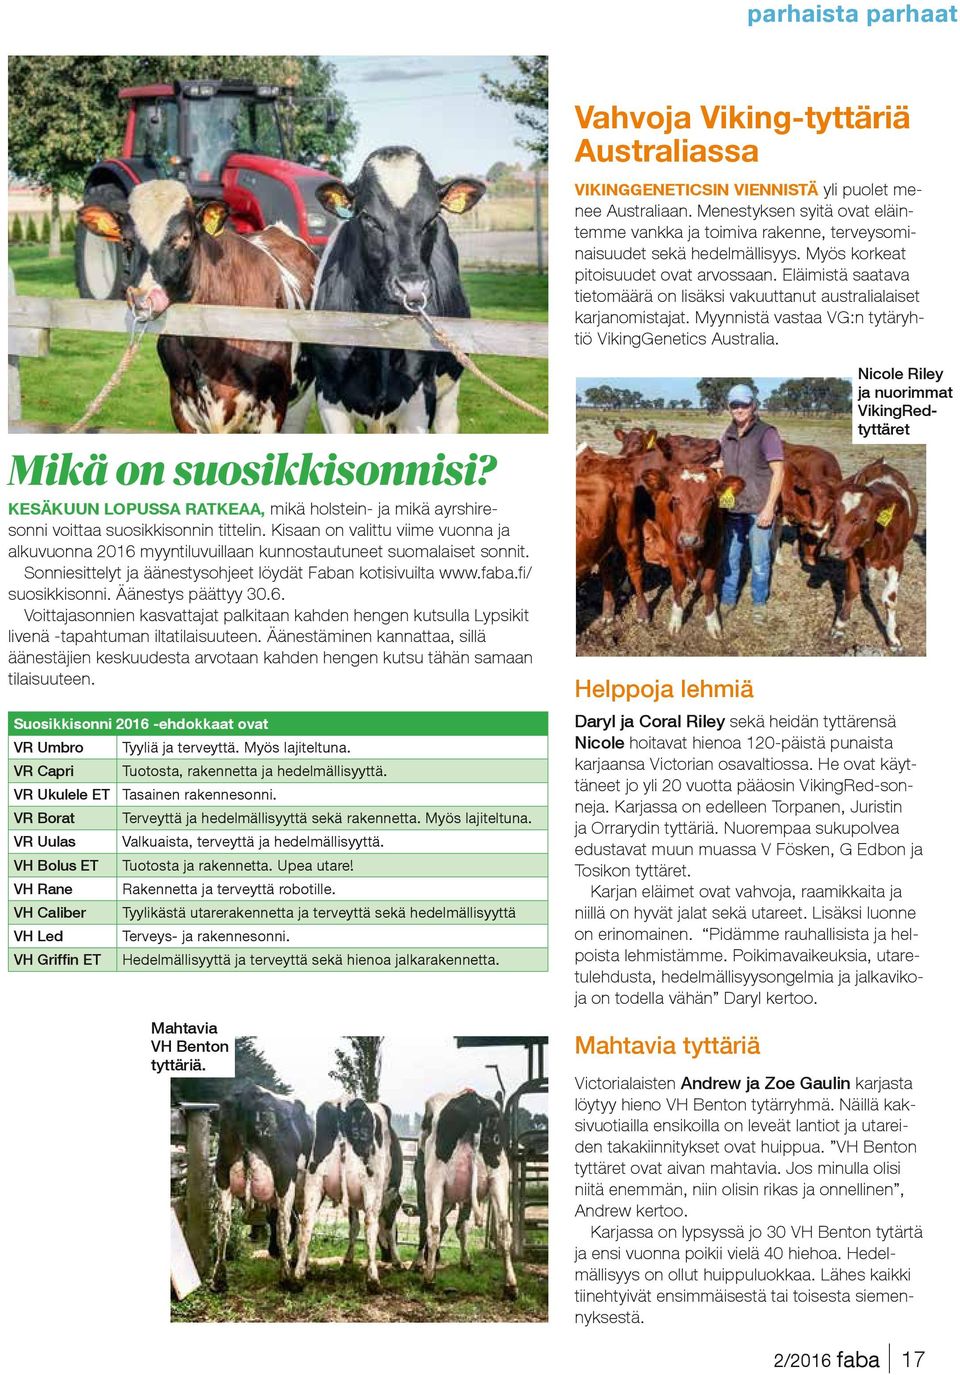 Eläimistä saatava tietomäärä on lisäksi vakuuttanut australialaiset karjanomistajat. Myynnistä vastaa VG:n tytäryhtiö VikingGenetics Australia. Mikä on suosikkisonnisi?